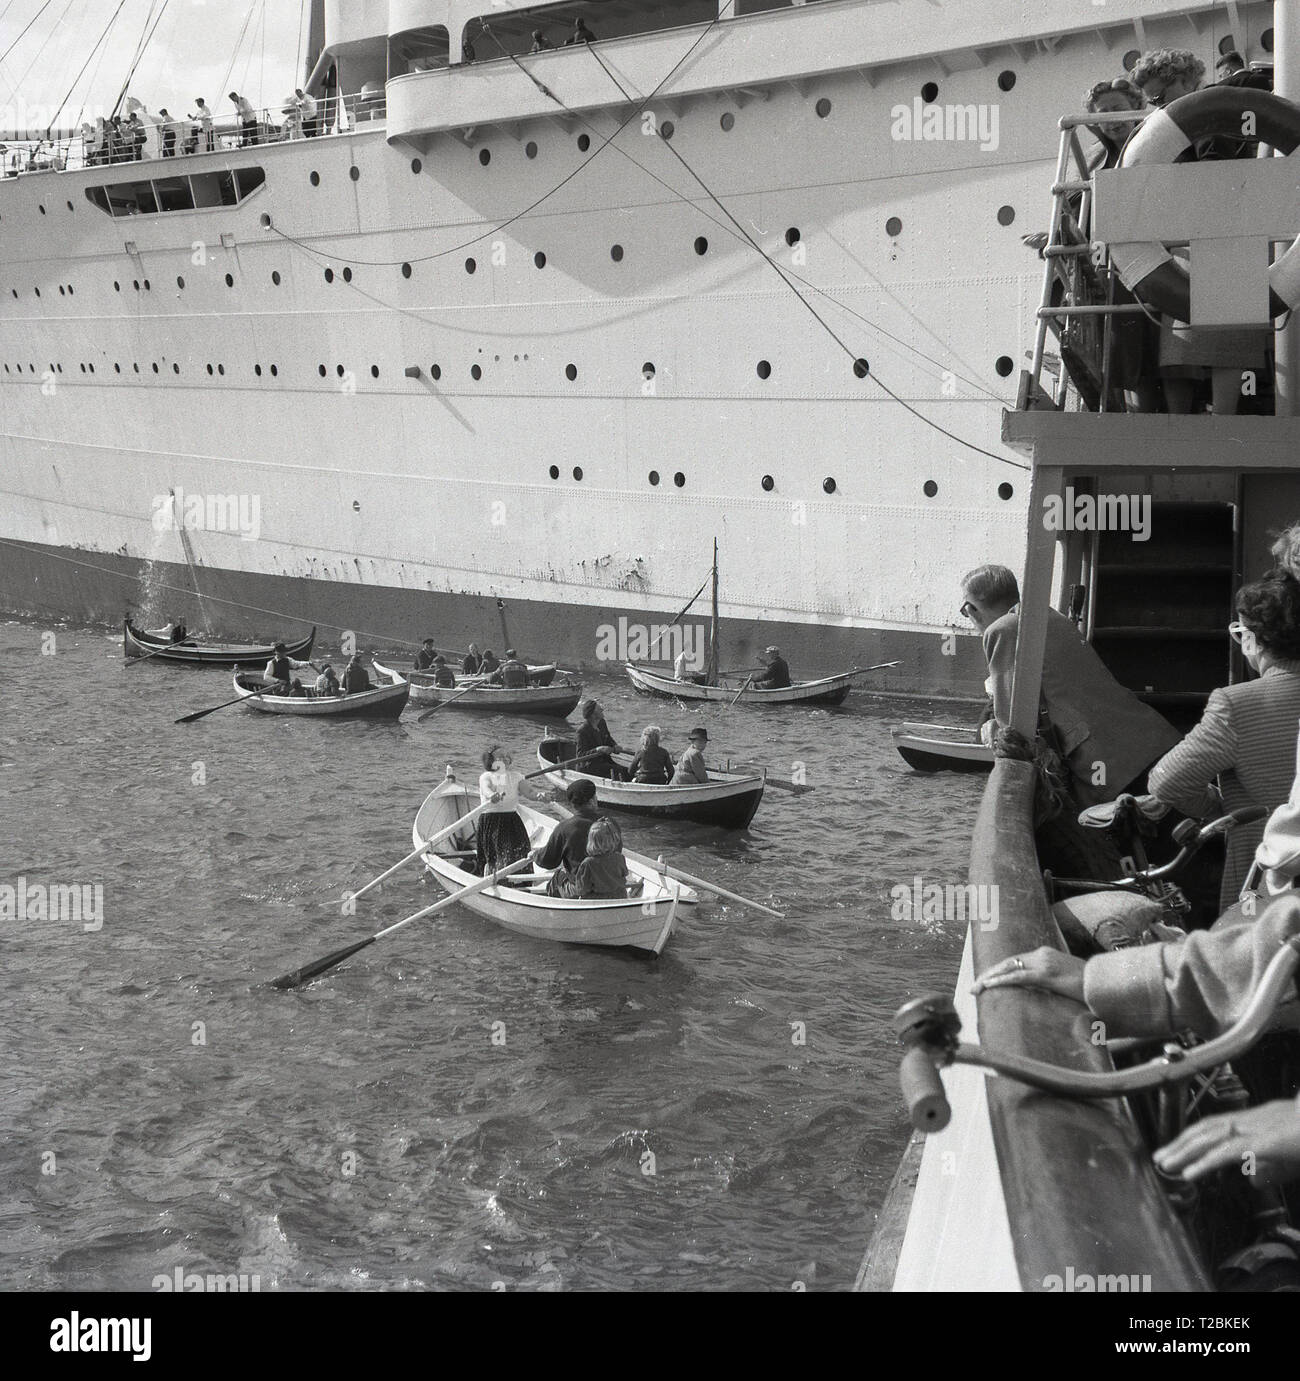 1950, historische, Passagiere in kleine Ruderboote oder Rettungsboote neben einem großen Kreuzfahrt Dampfschiff. Stockfoto